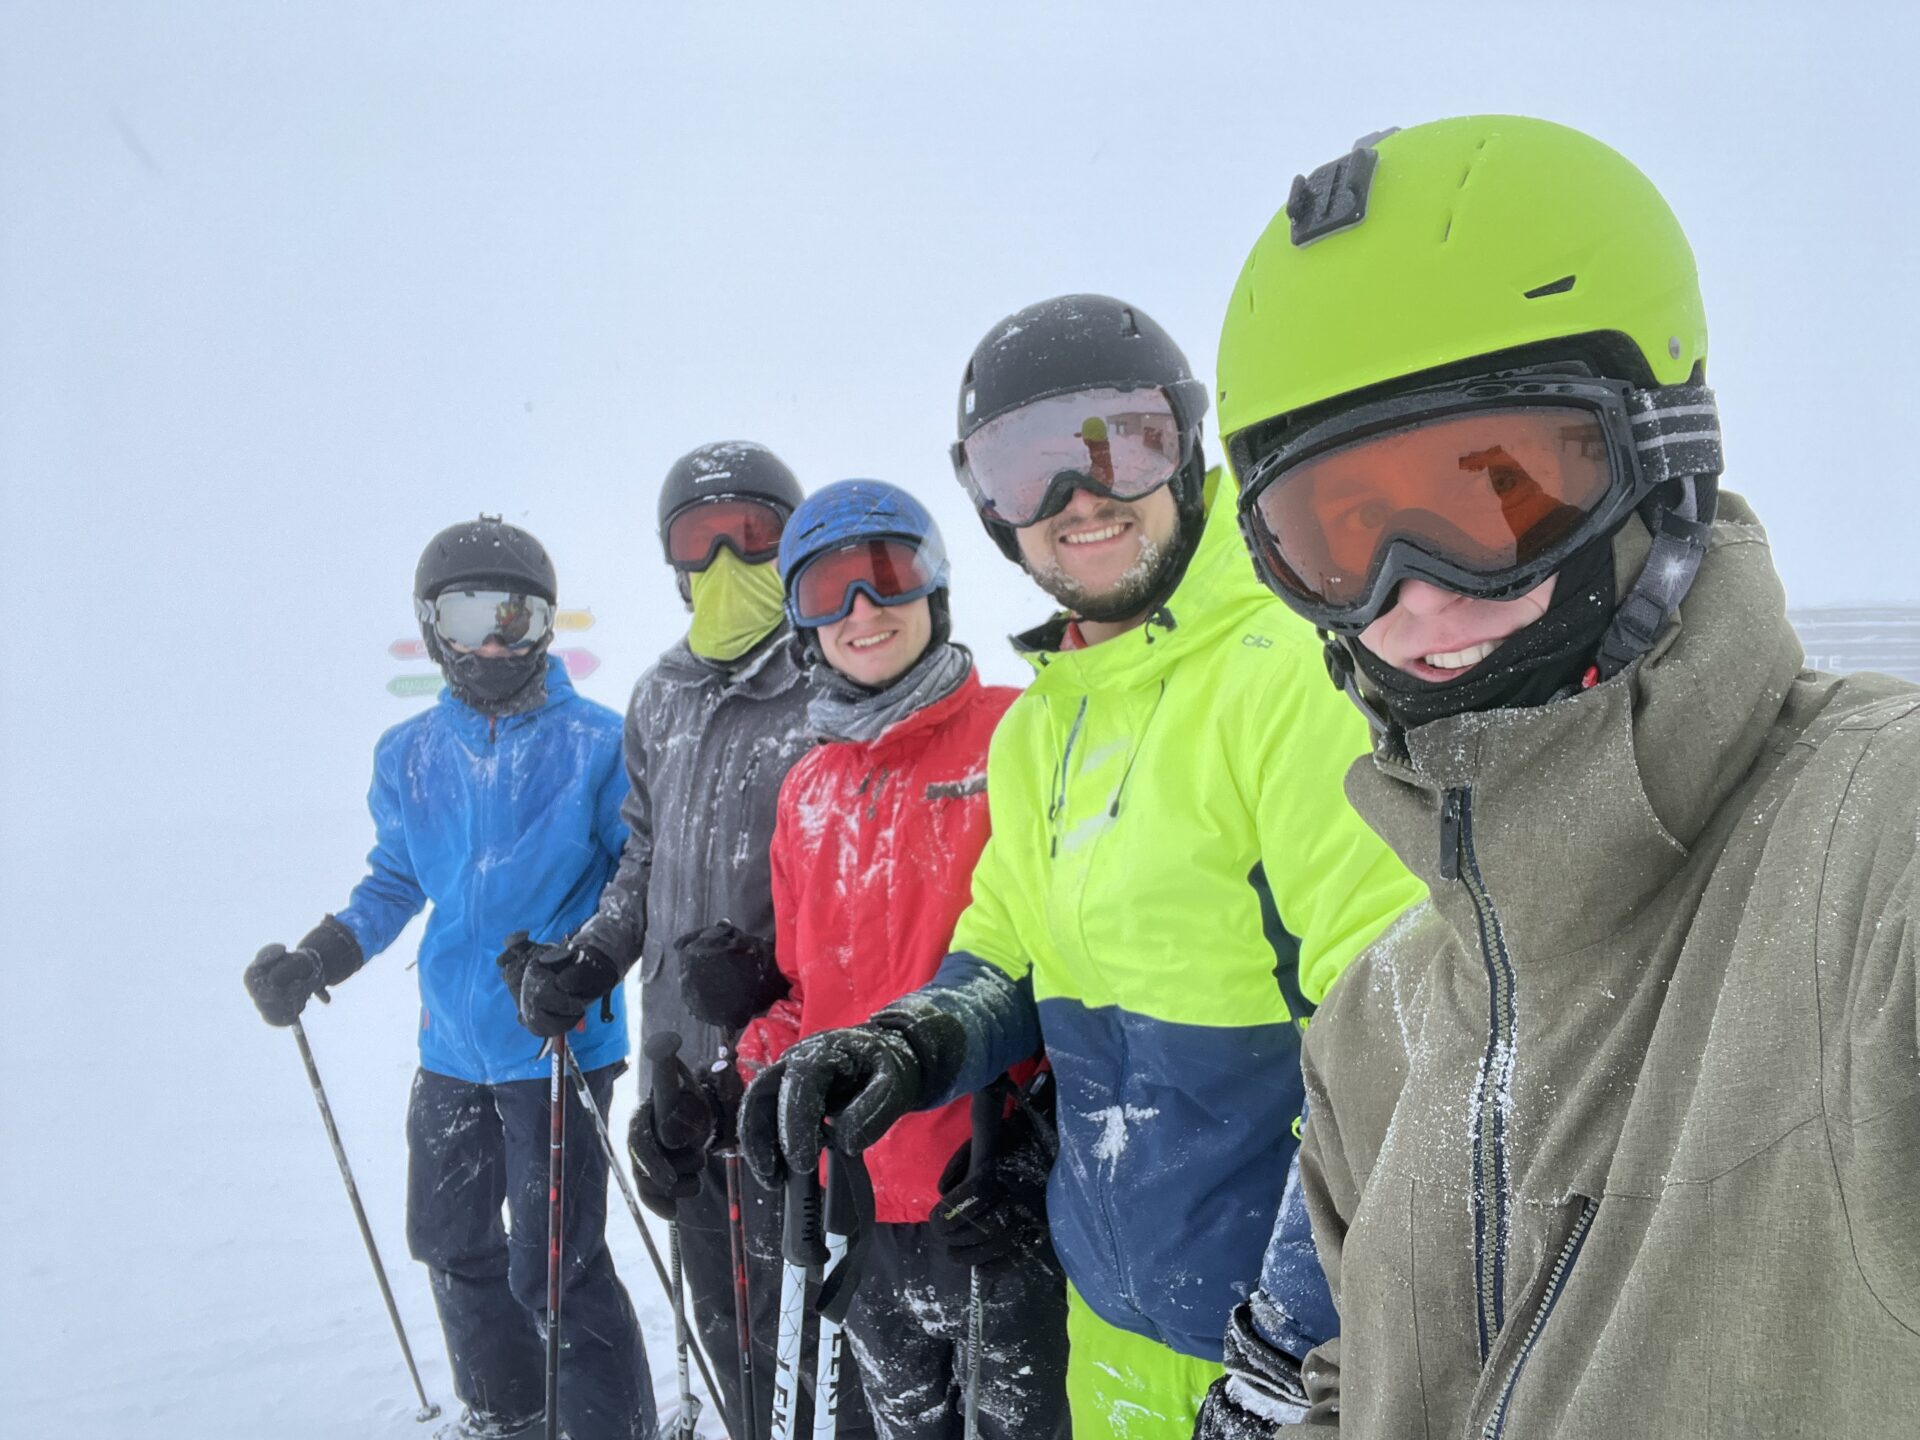 Gruppenfoto von KJBlern am Pistenrand im Schnee